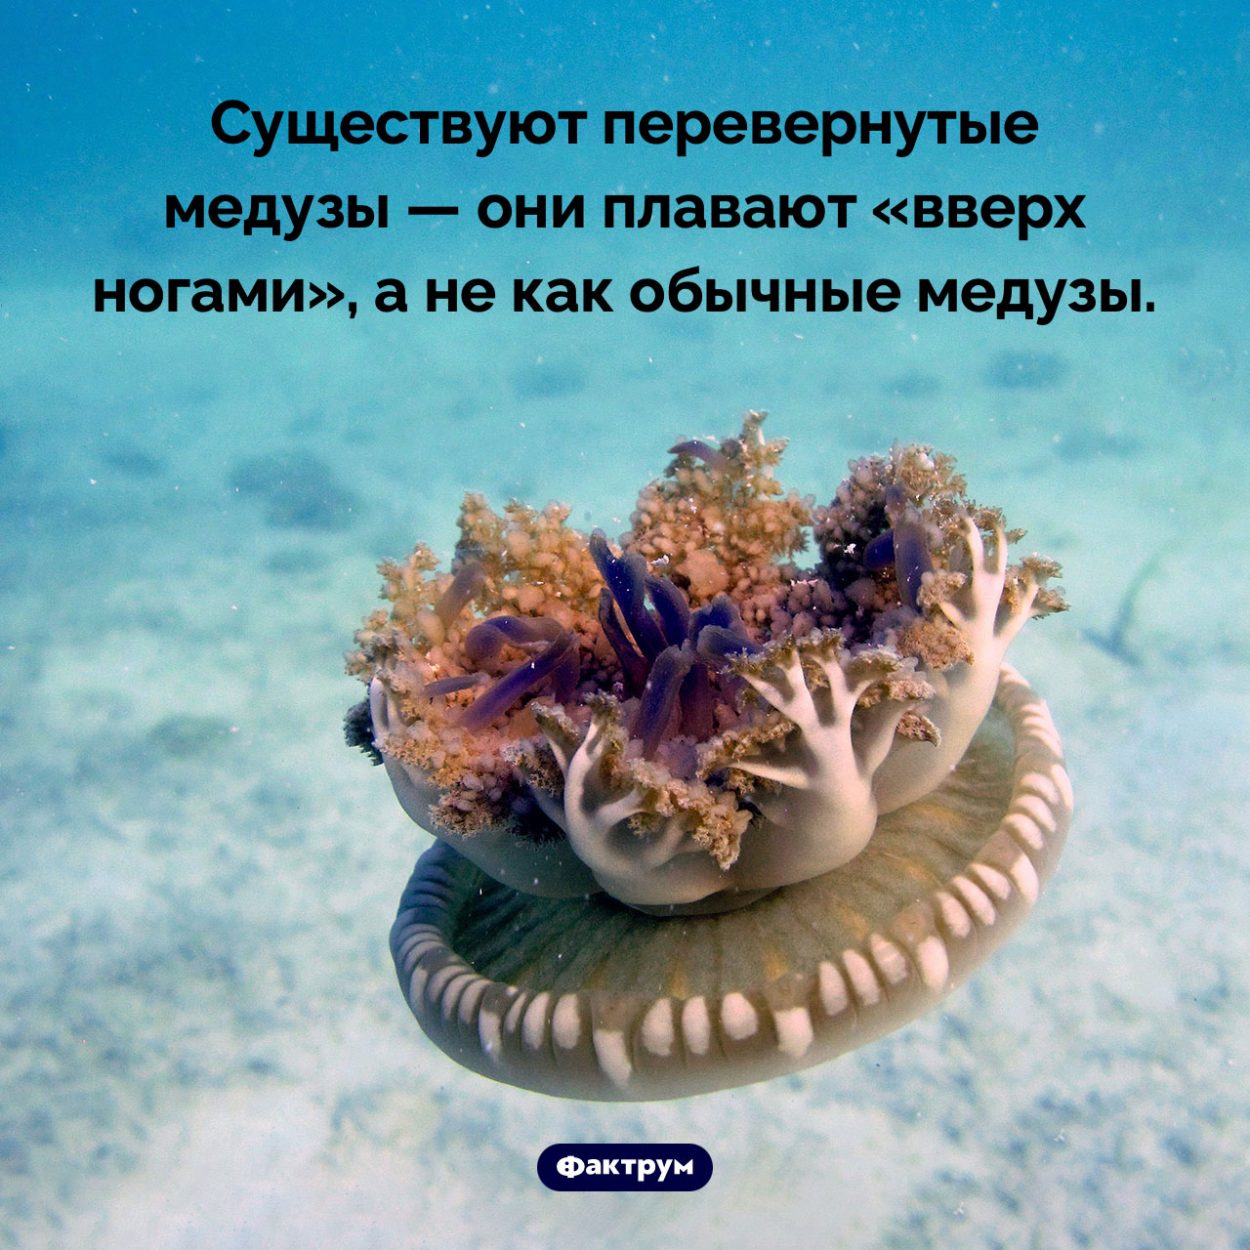 Перевернутые медузы. Существуют перевернутые медузы — они плавают «вверх ногами», а не как обычные медузы.